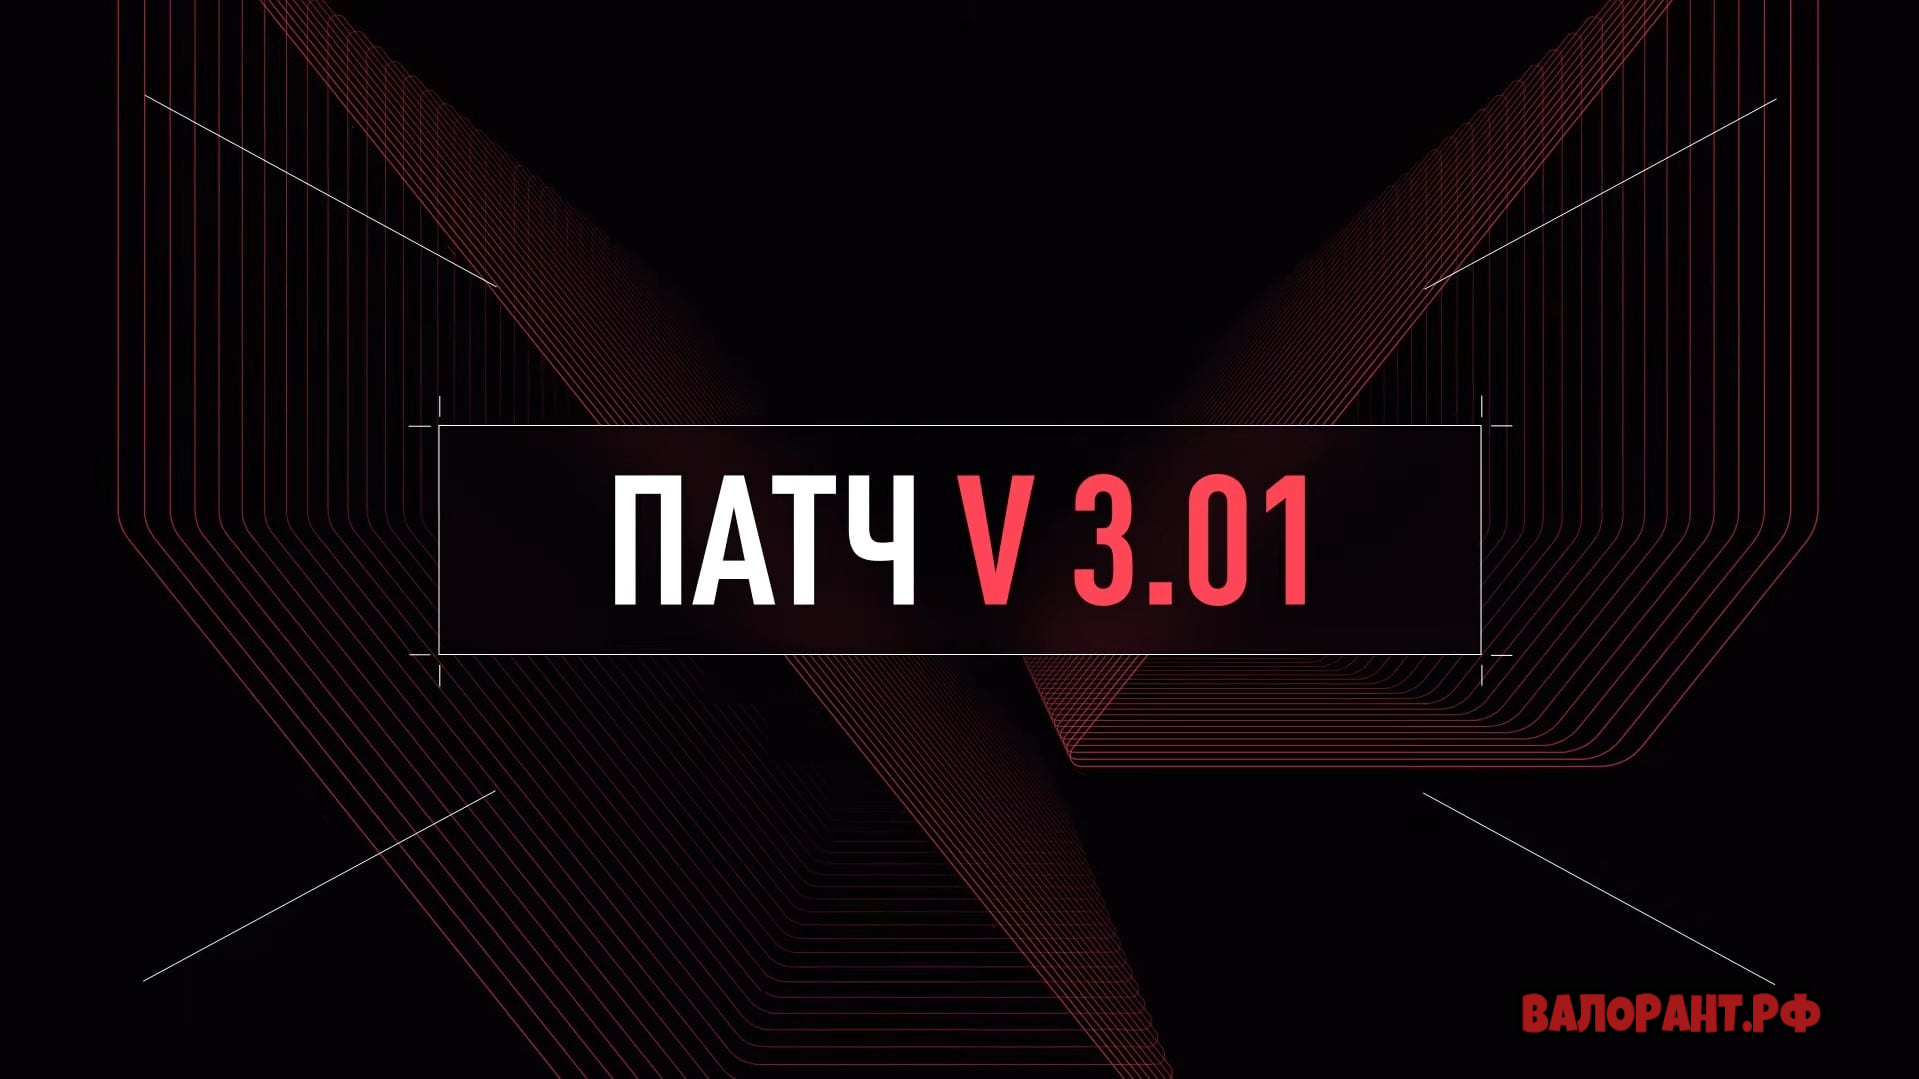 Spisok izmenenij Valorant patch 3.01 - Список изменений Валорант - патч 3.01